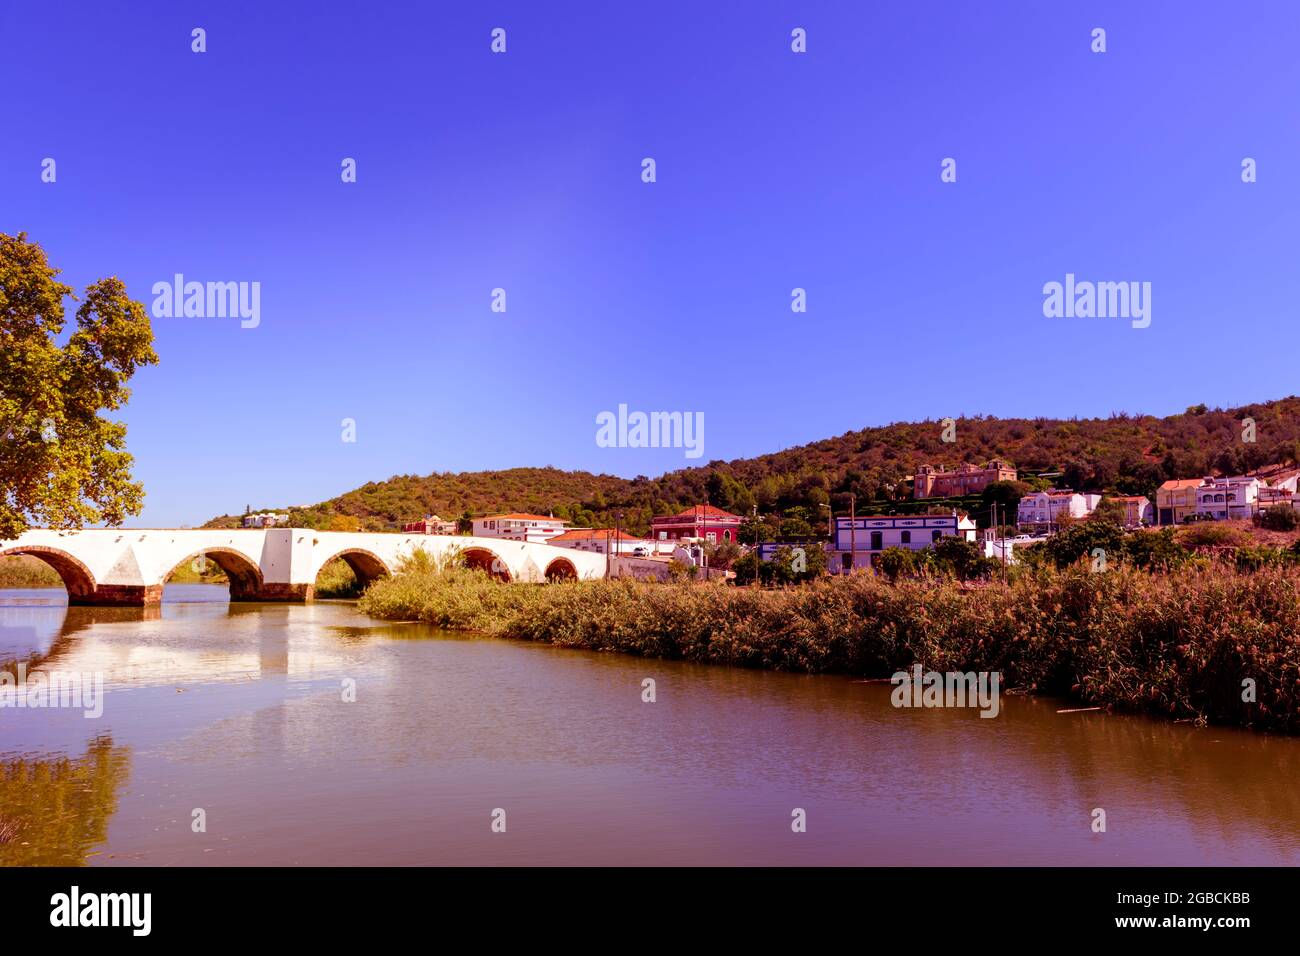 Le pont romain, ponte romana de l'autre côté de la rivière Arade à Silves Algarve Portugal Banque D'Images